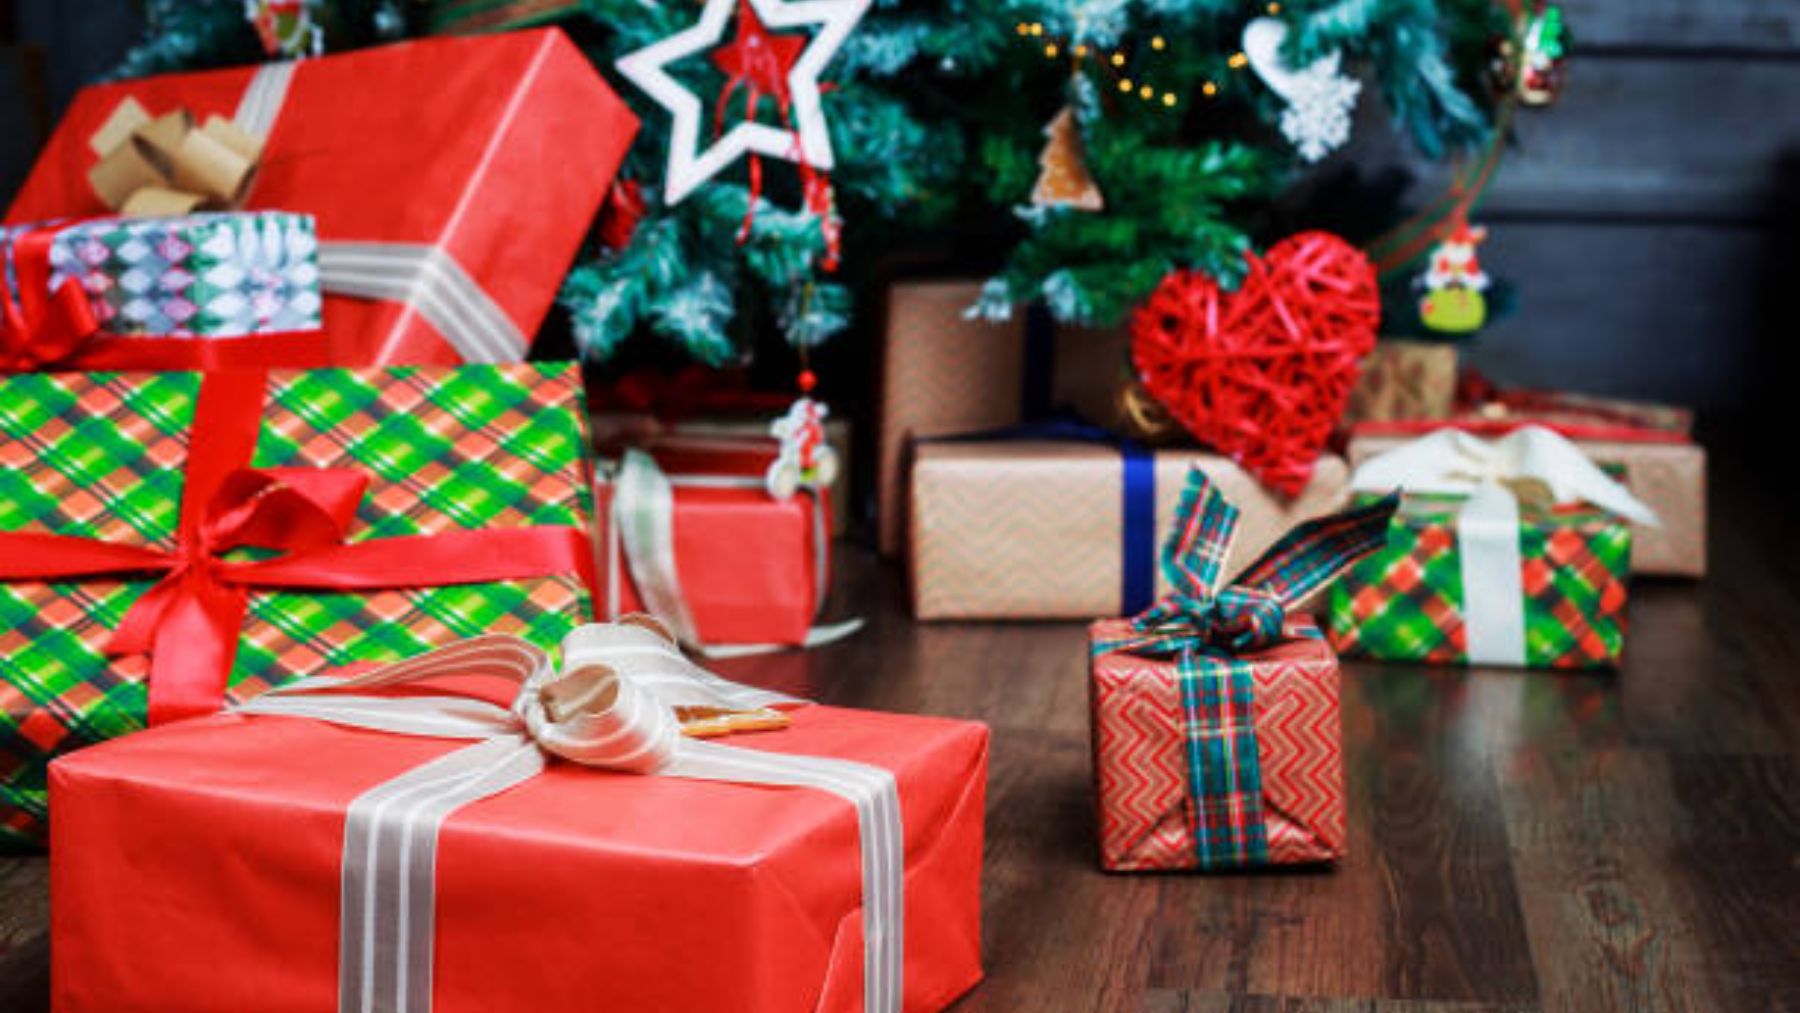 Las revistas de diciembre llegan a los quioscos con unos increíbles regalos que hacen la competencia al mismísimo Papá Noel